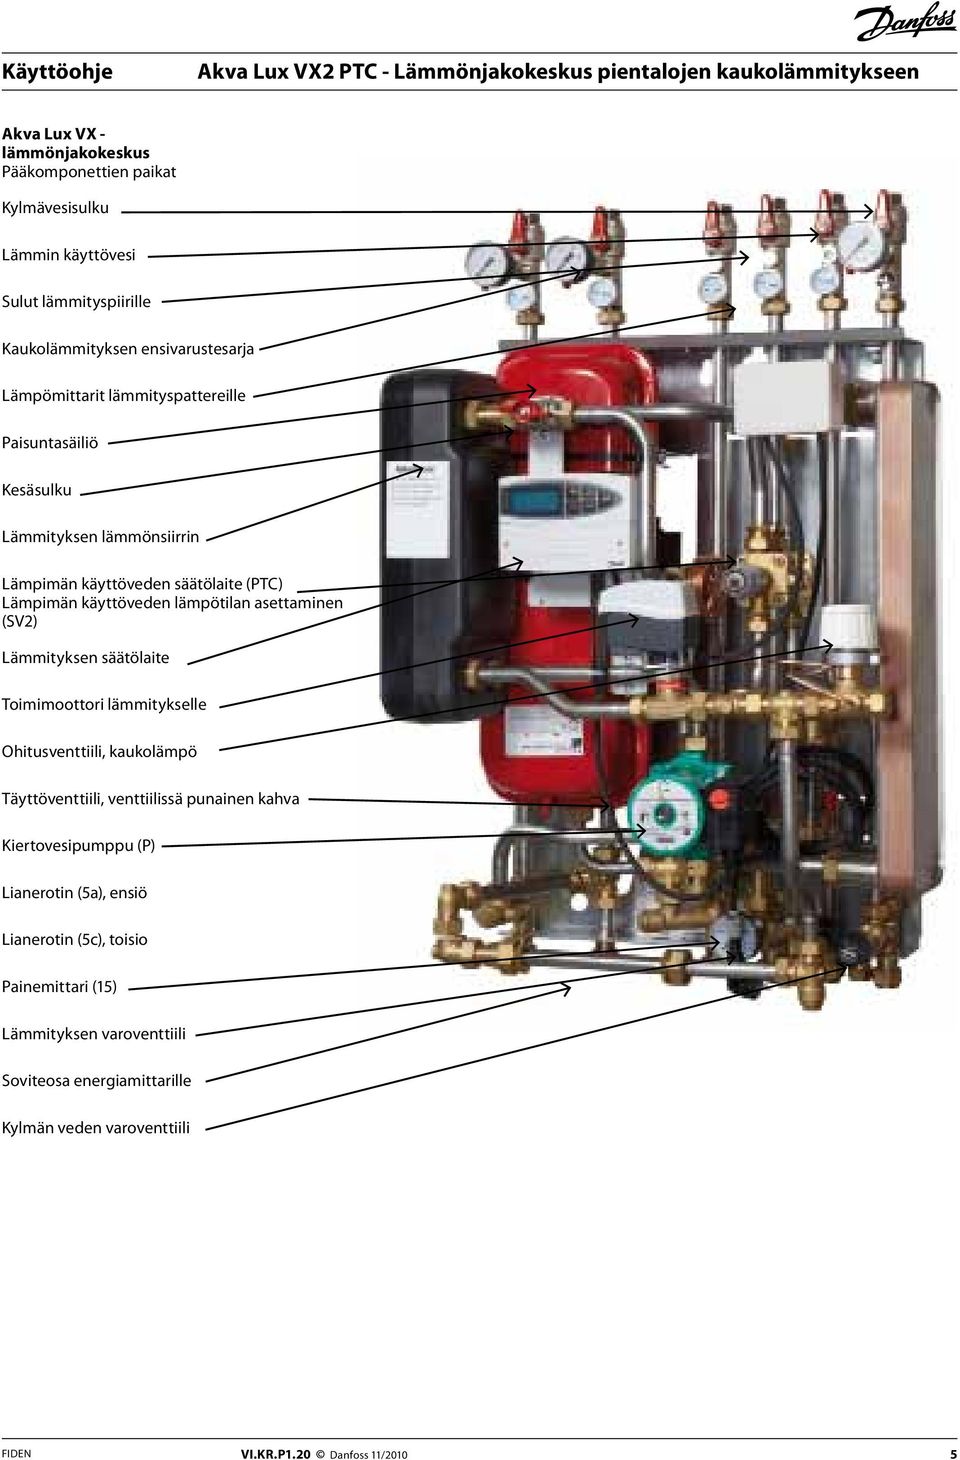 Lämmityksen säätölaite Toimimoottori lämmitykselle Ohitusventtiili, kaukolämpö Täyttöventtiili, venttiilissä punainen kahva Kiertovesipumppu (P) Lianerotin